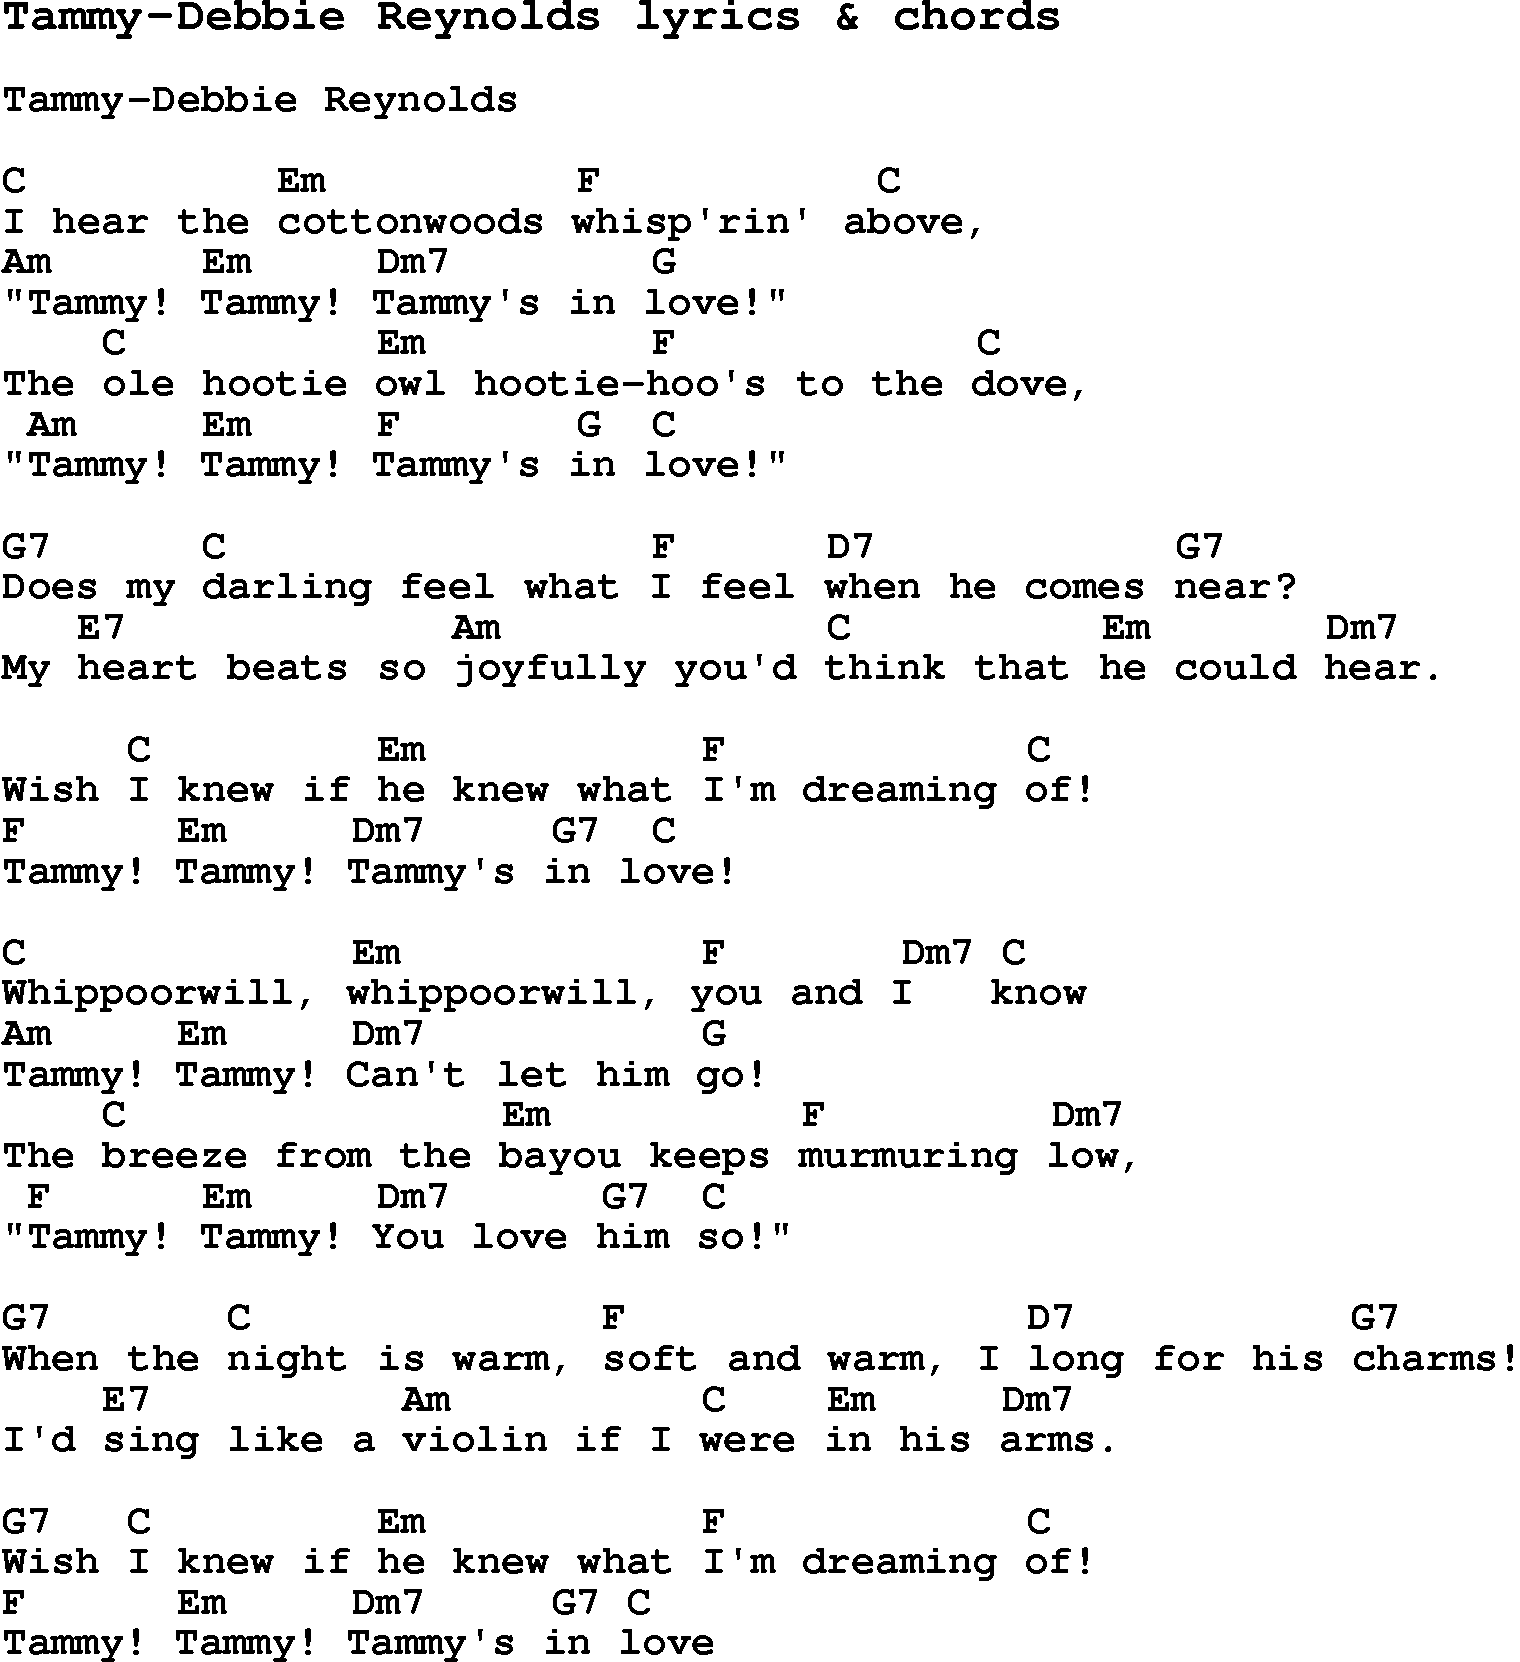 Love Song Lyrics for: Tammy-Debbie Reynolds with chords for Ukulele, Guitar Banjo etc.